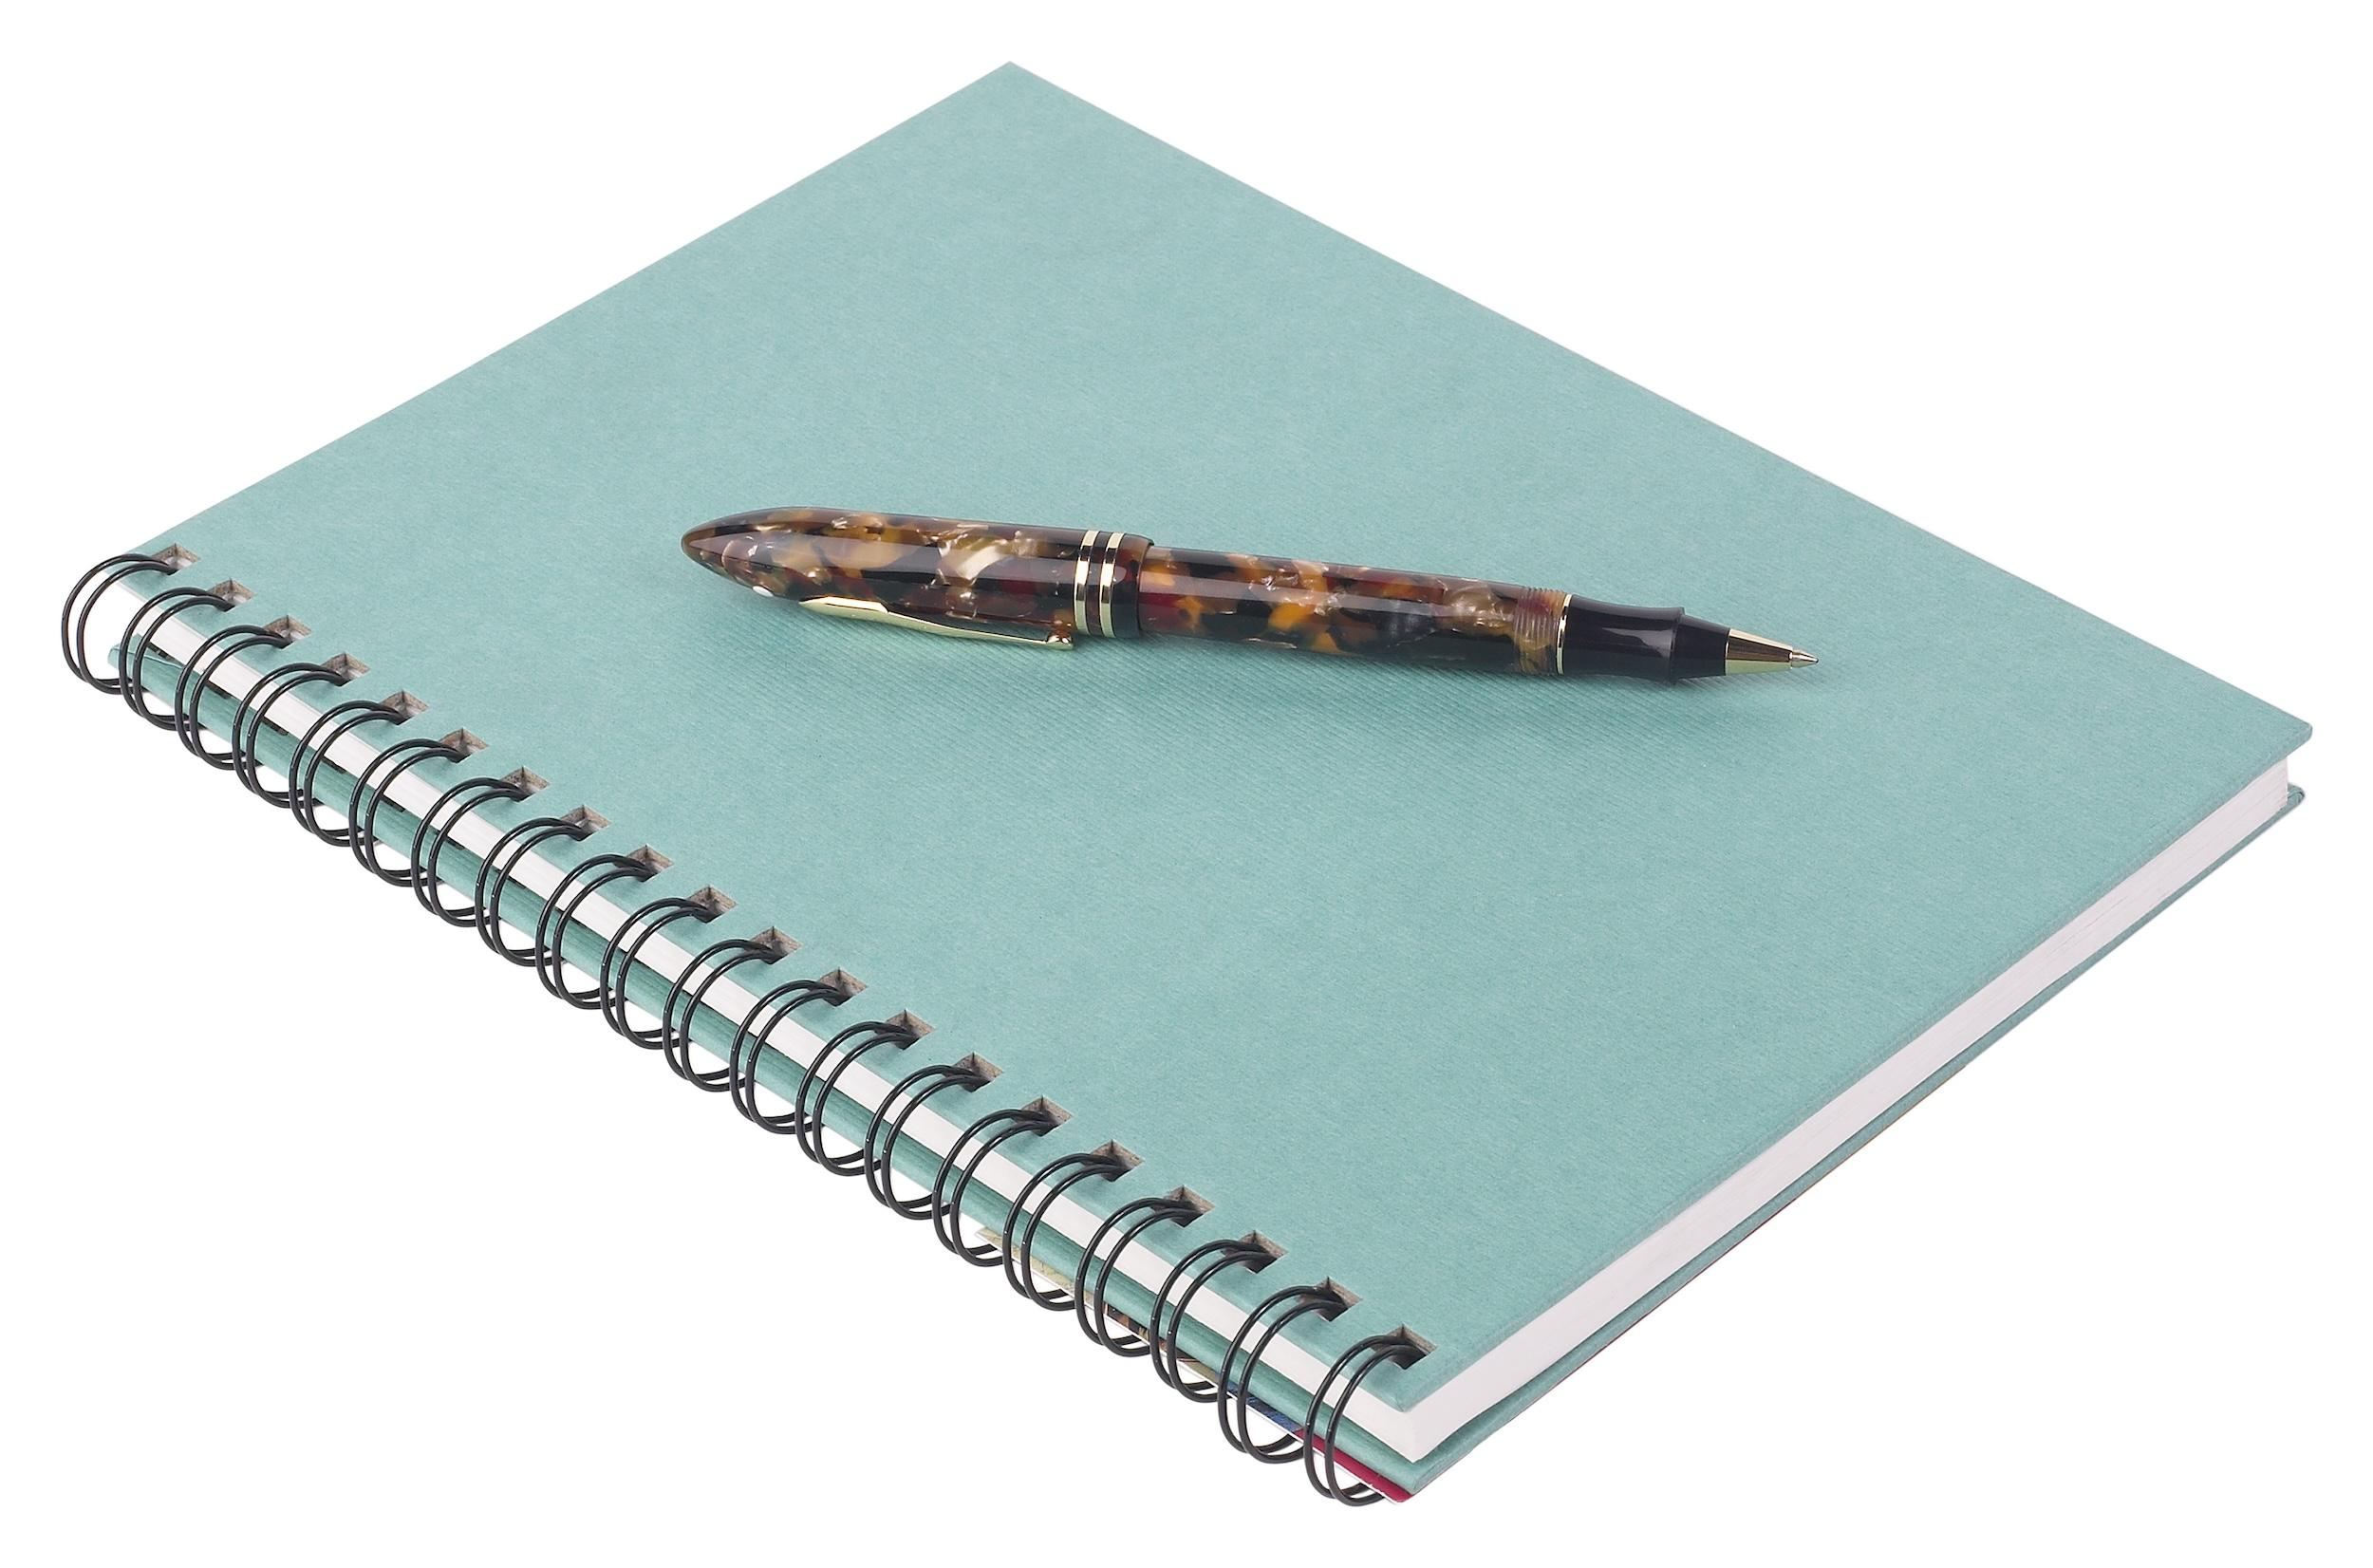 Un quaderno a spirale con copertina rigida in turchese con penna